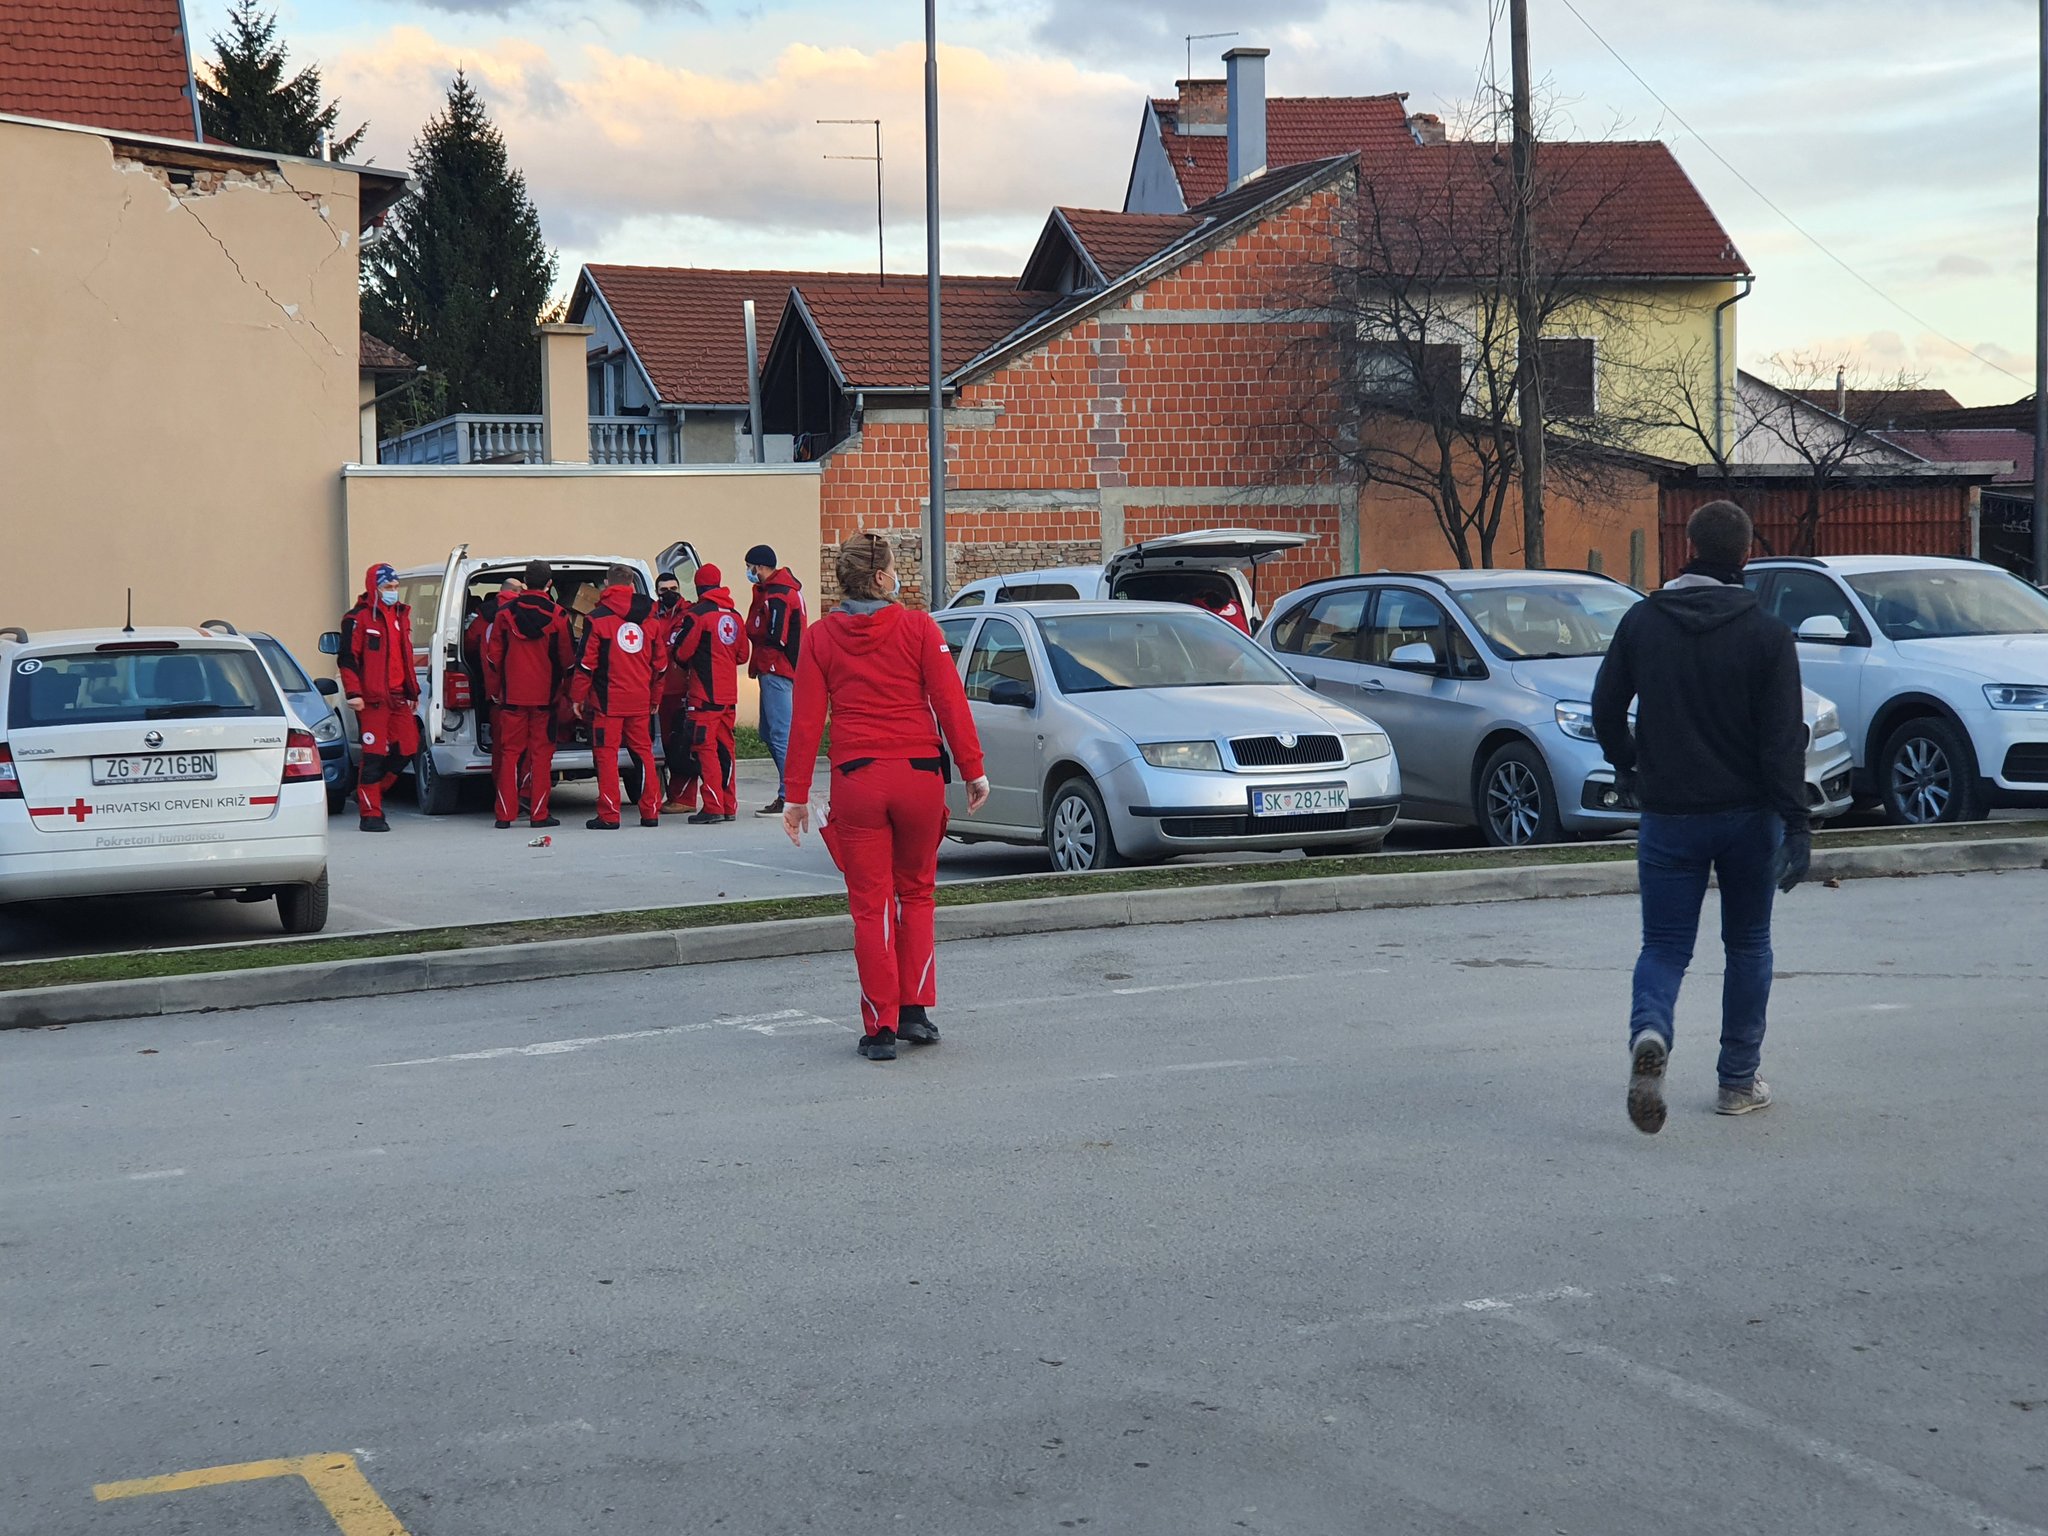 Hrvatski Crveni križ (Croce Rossa Croata) – Petrinji (HR), I primi soccorsi alla popolazione dopo il sisma di oggi di Magnitudo 6.4